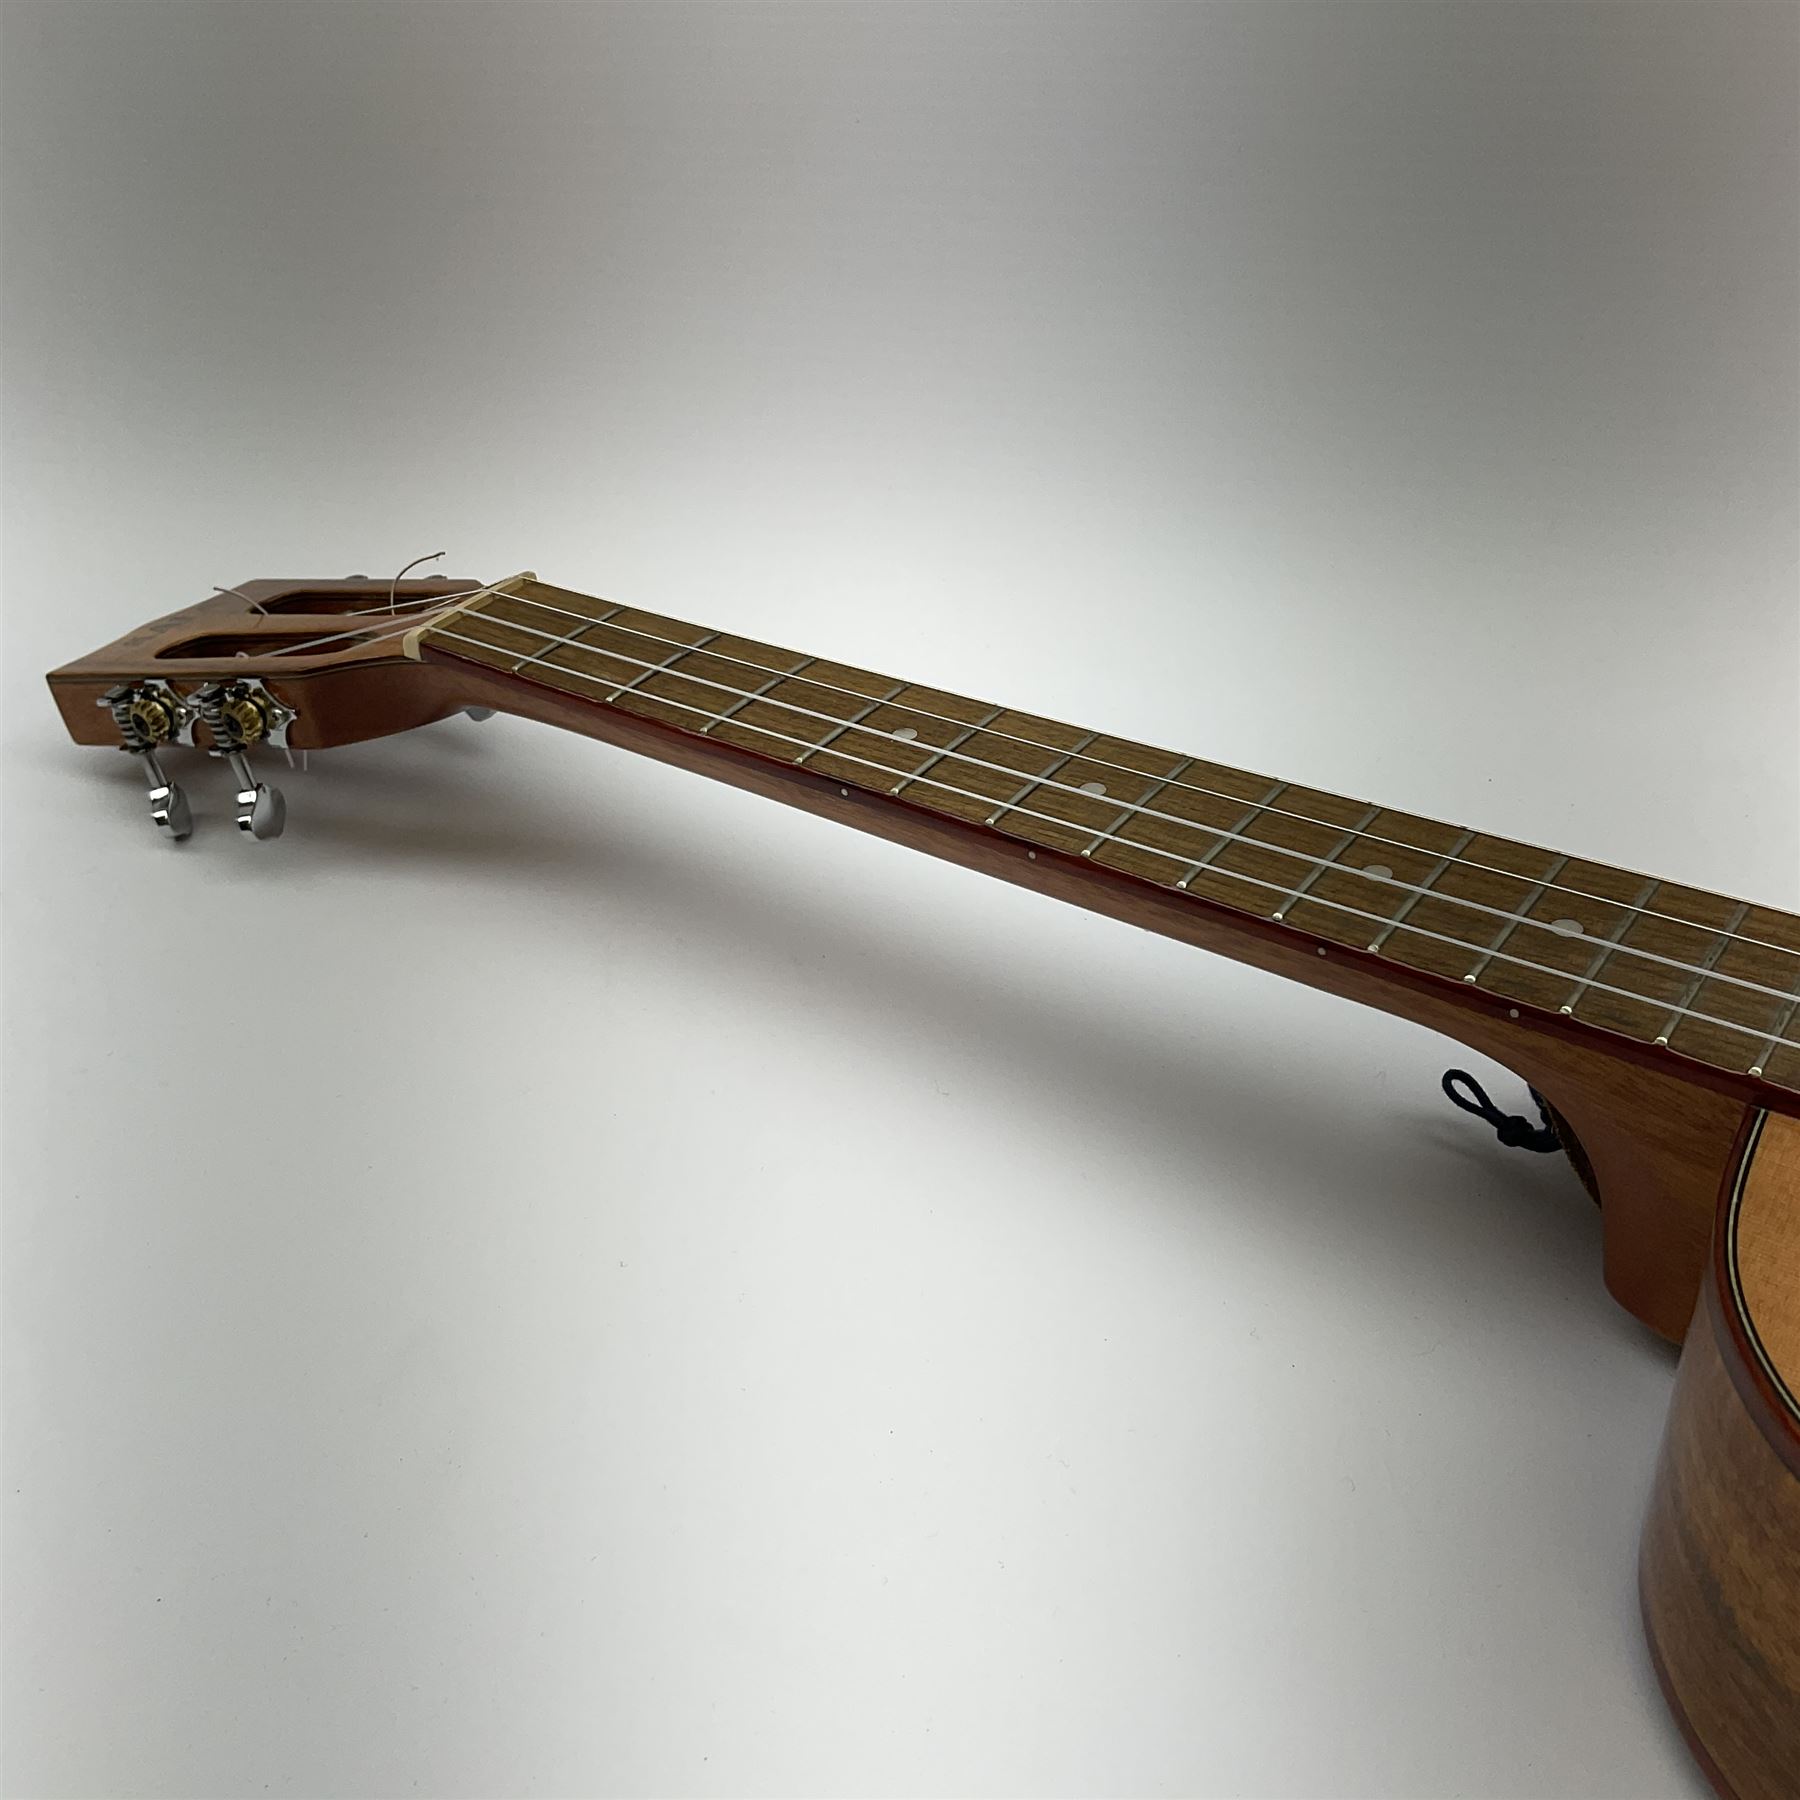 Modern Kala ukulele with acacia back and sides - Image 9 of 12